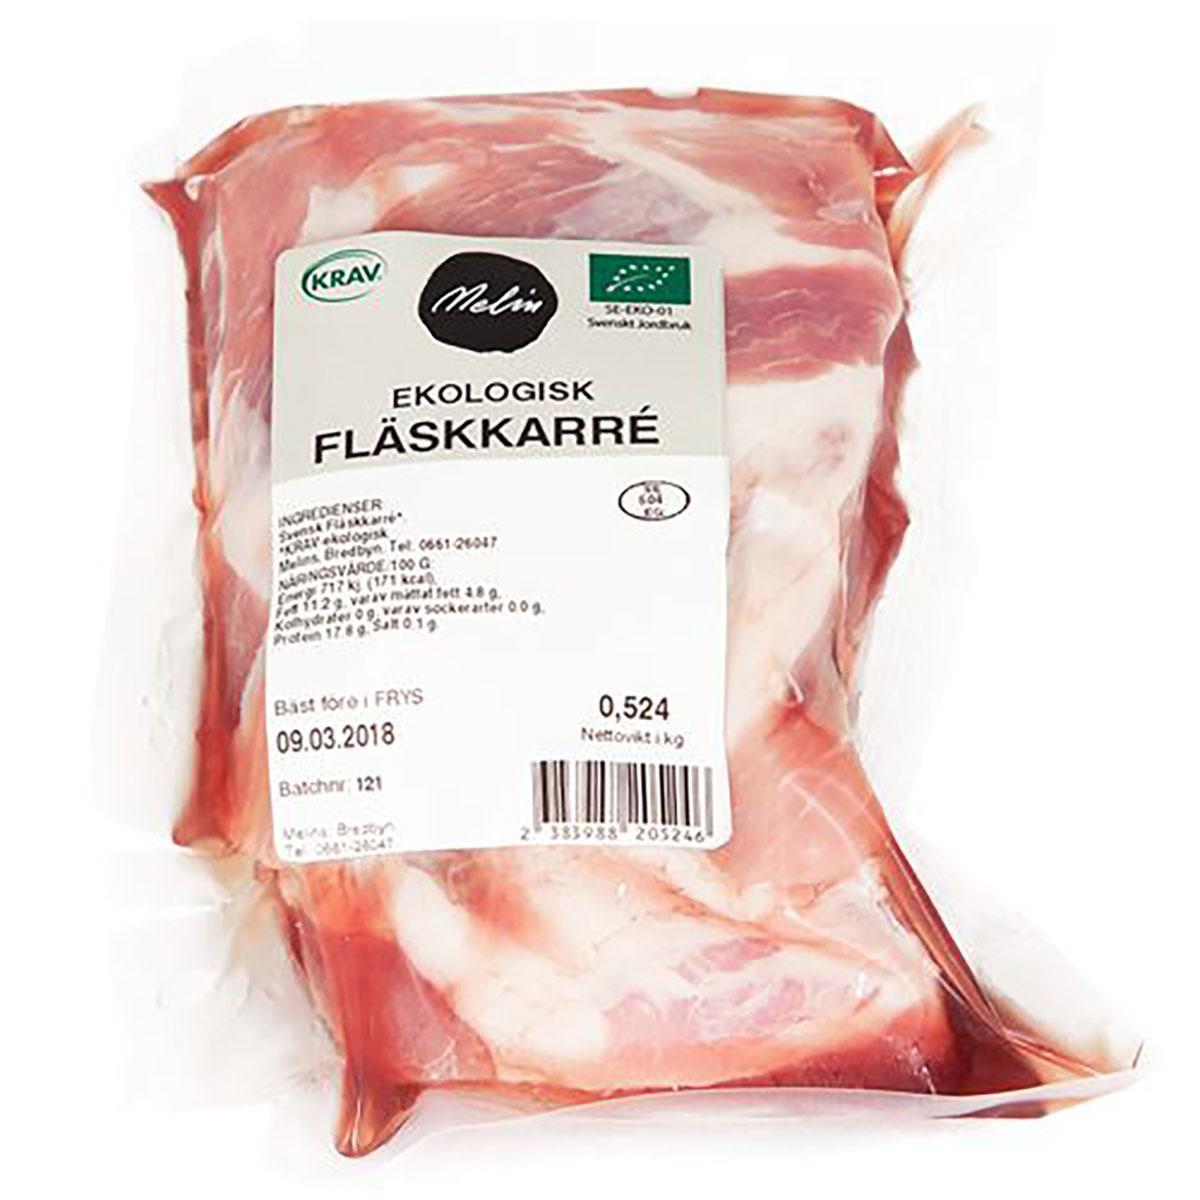 Melins's Fläskkarré '